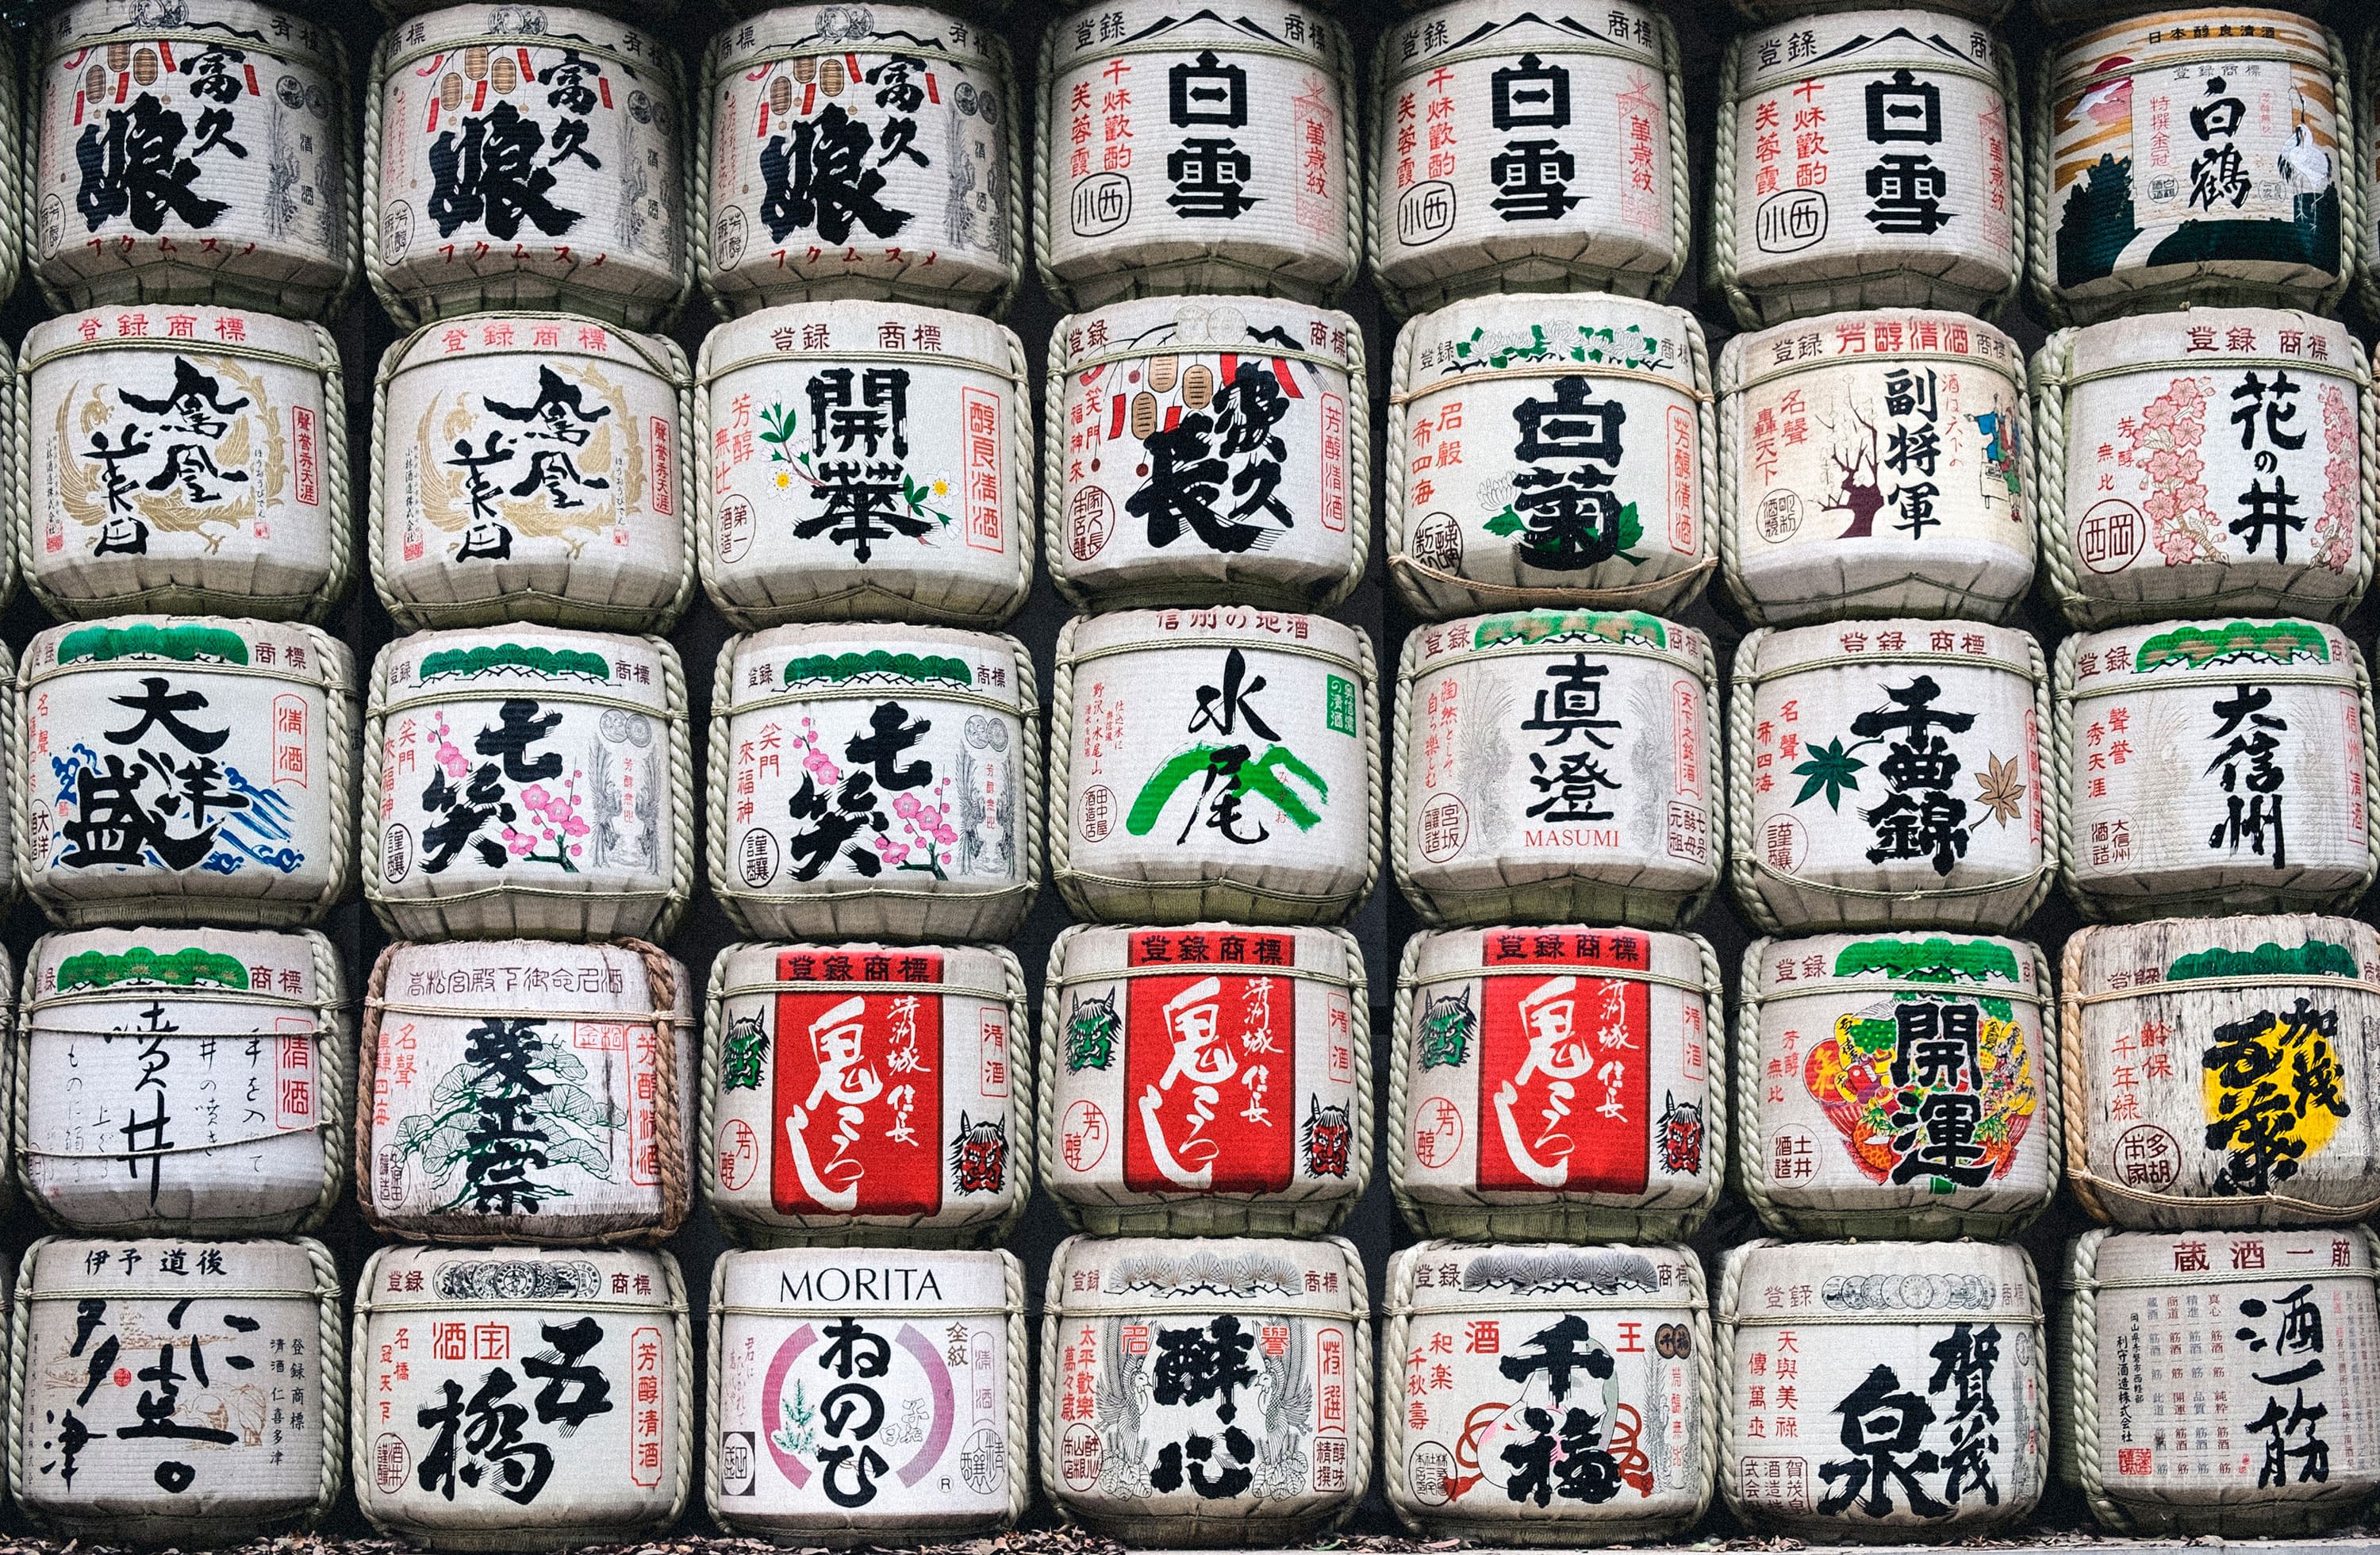 Viaje semi organizado a Japón &#26085;&#26412; - 14 días | Viajes Eurotrip